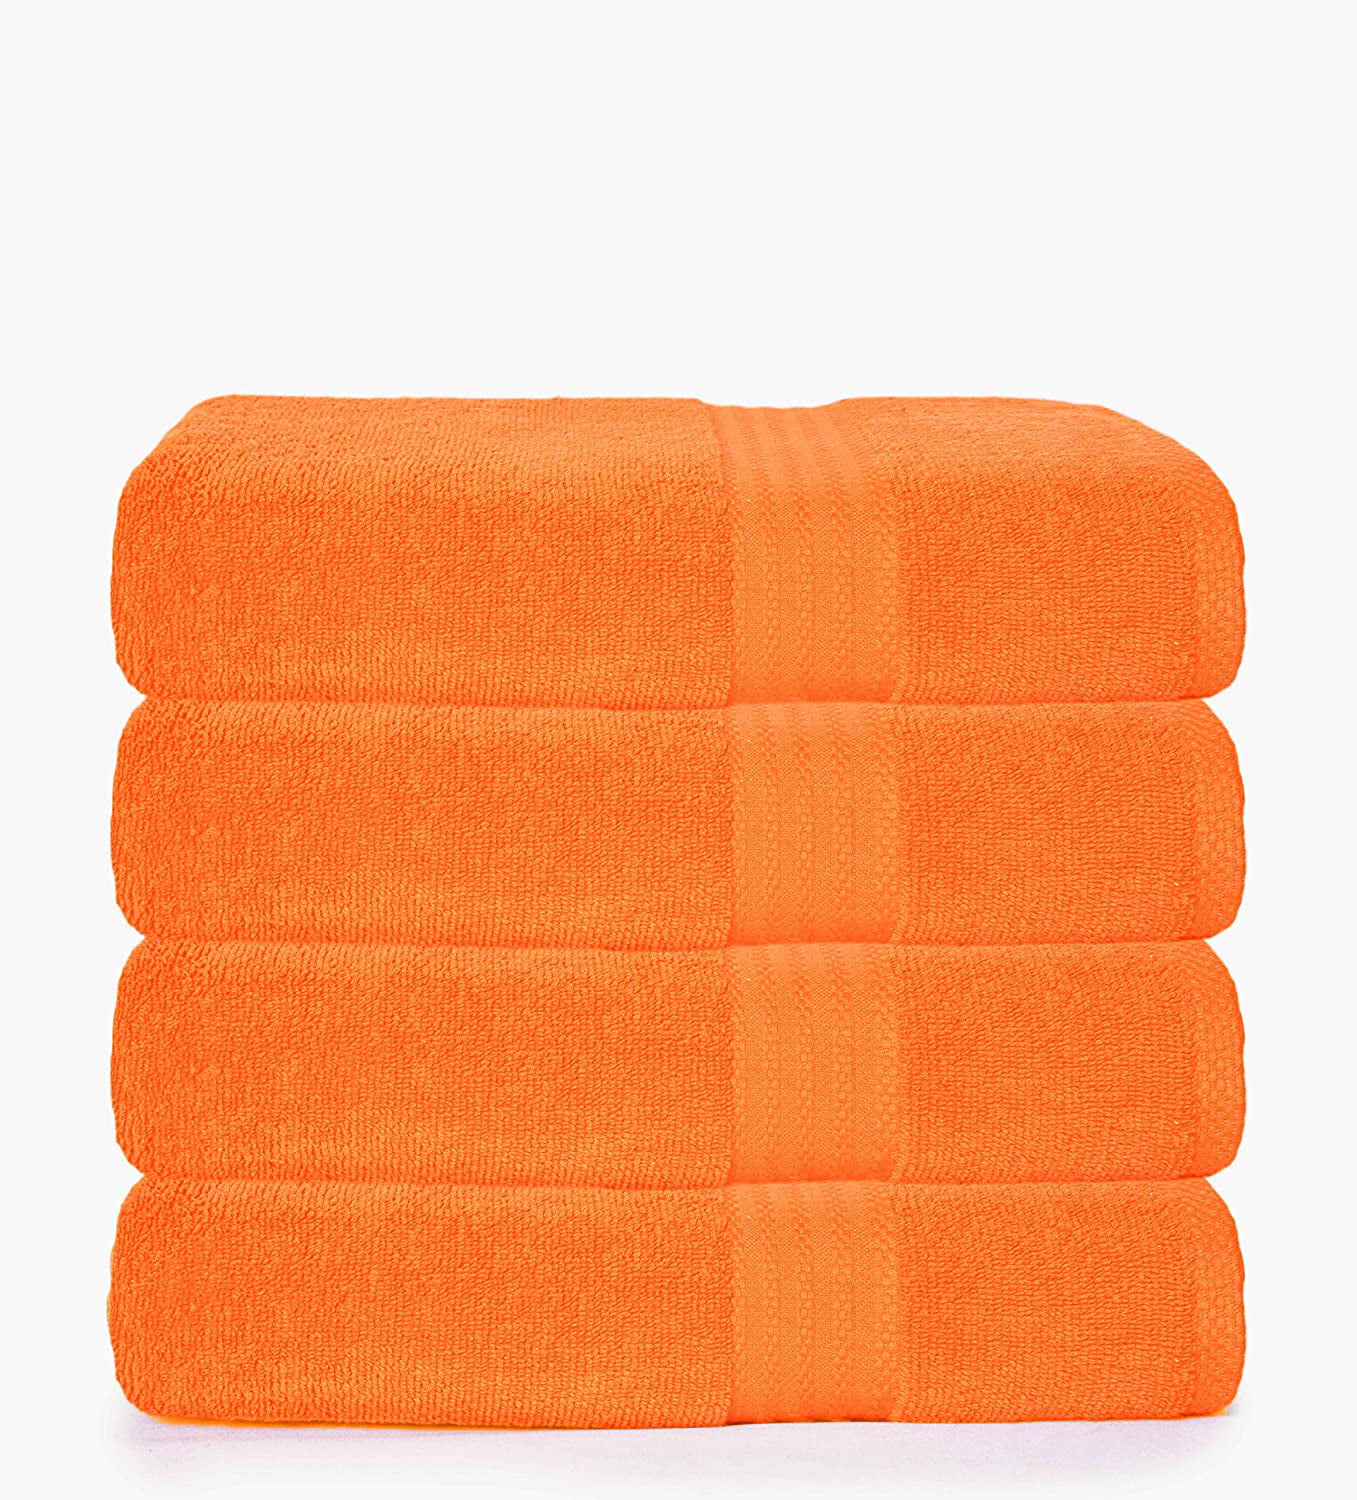 Orange 100% Cotton Bath Towels Set of 4 Large 27" x 54" Size 